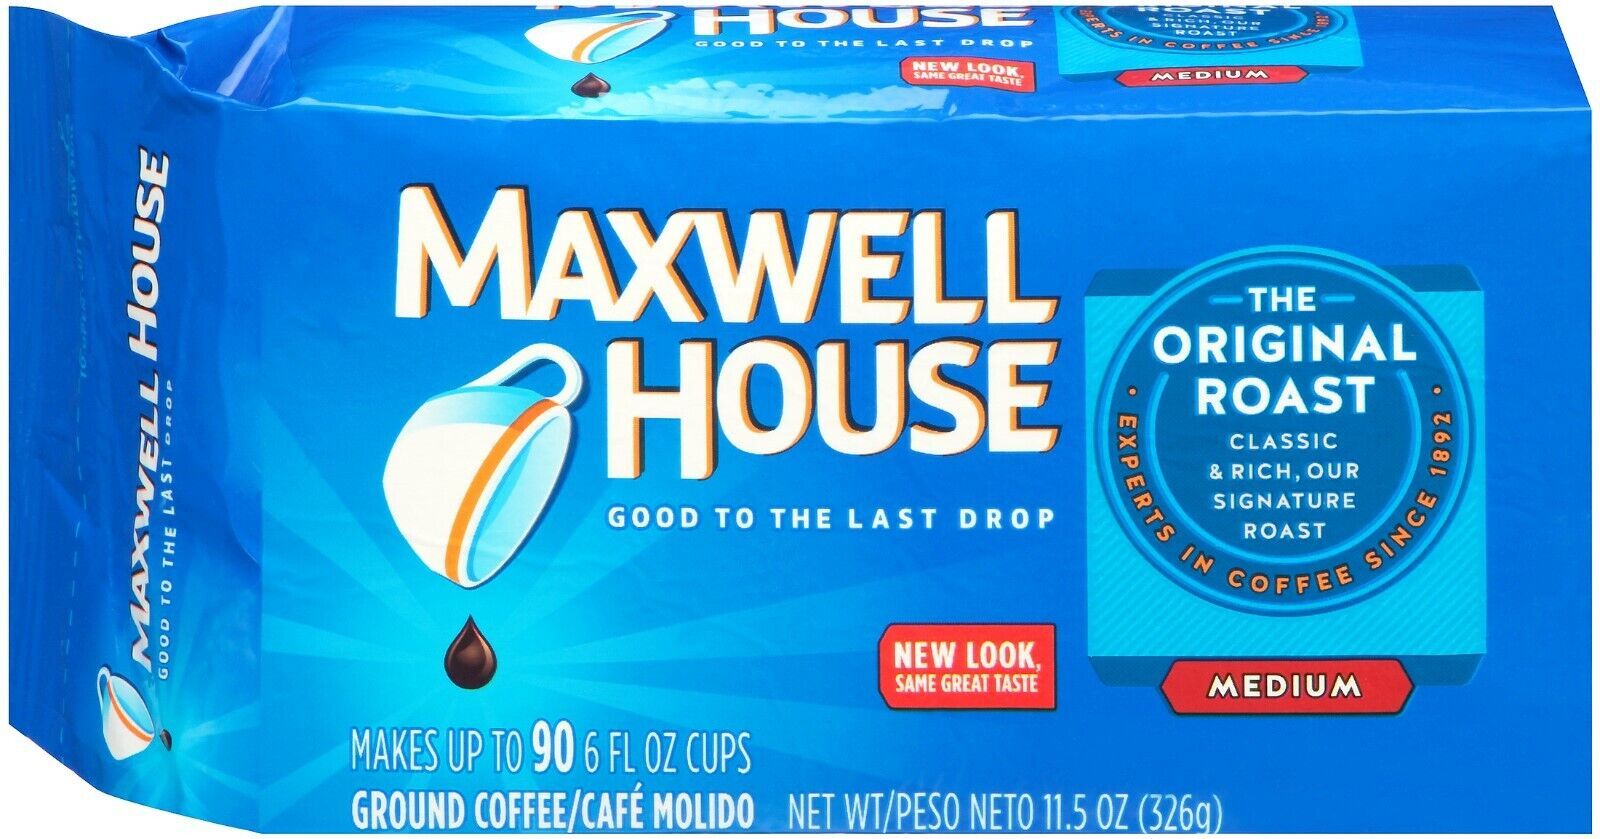 Primary image for 1 Maxwell House ORIGINAL ROAST MEDIUM Custom Roasted Ground COFFEE Vacuum Bag